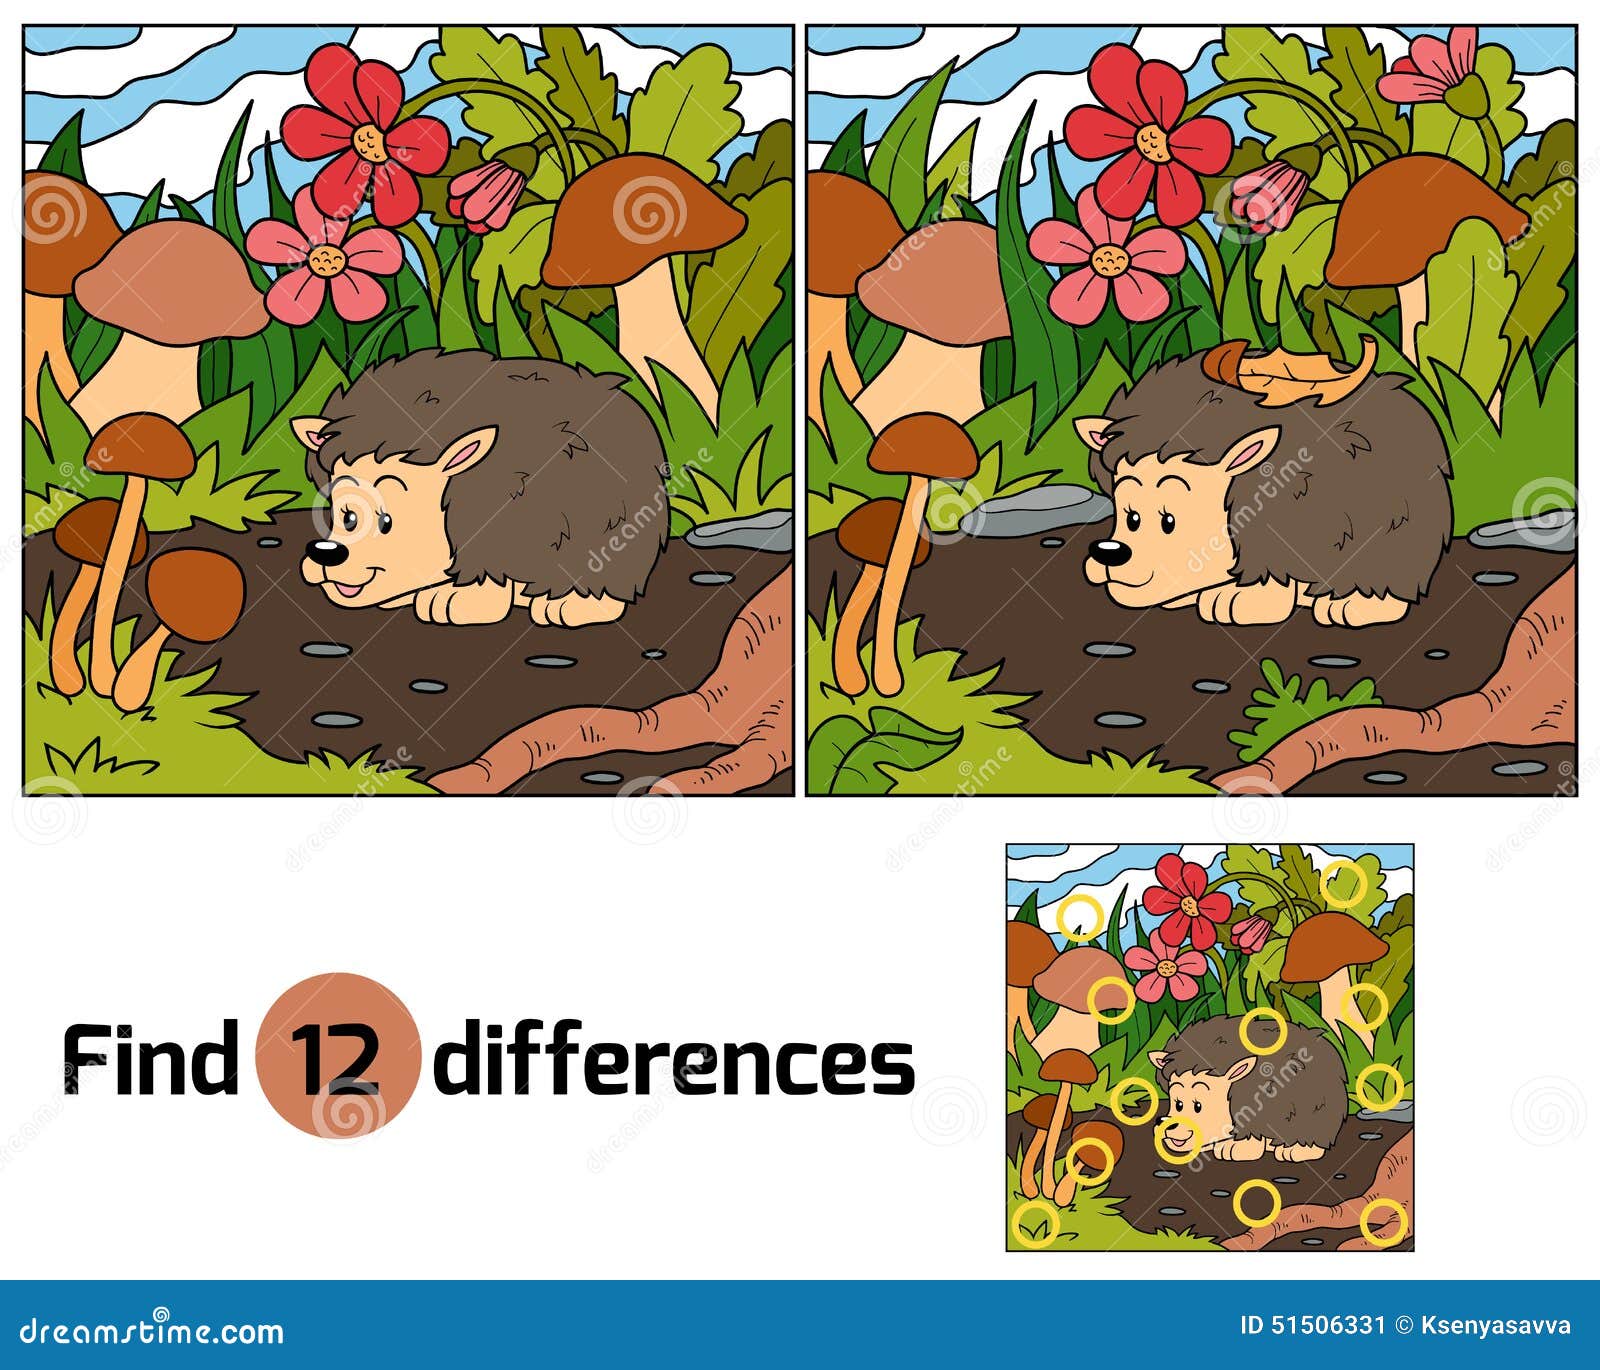 find differences (hedgehog)